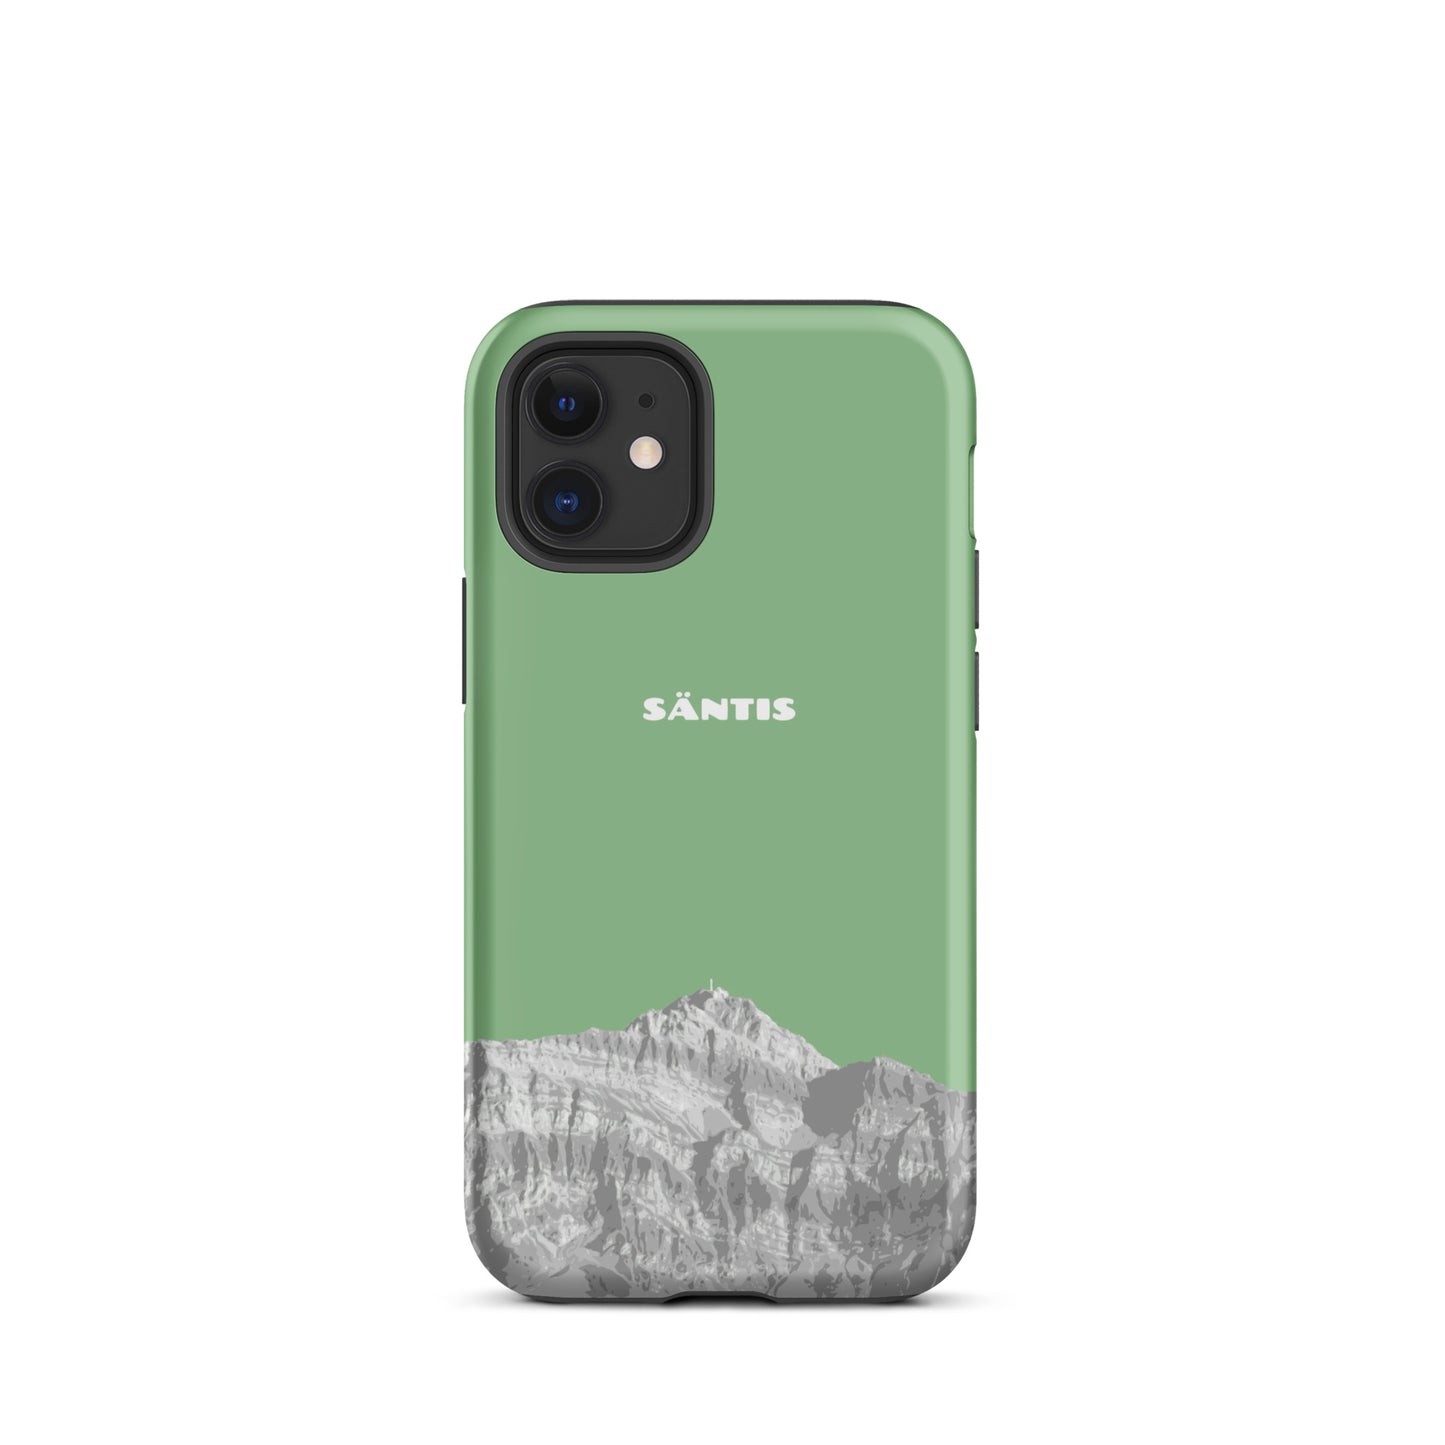 Hülle für das iPhone 12 Mini von Apple in der Farbe Hellgrün, dass den Säntis im Alpstein zeigt.